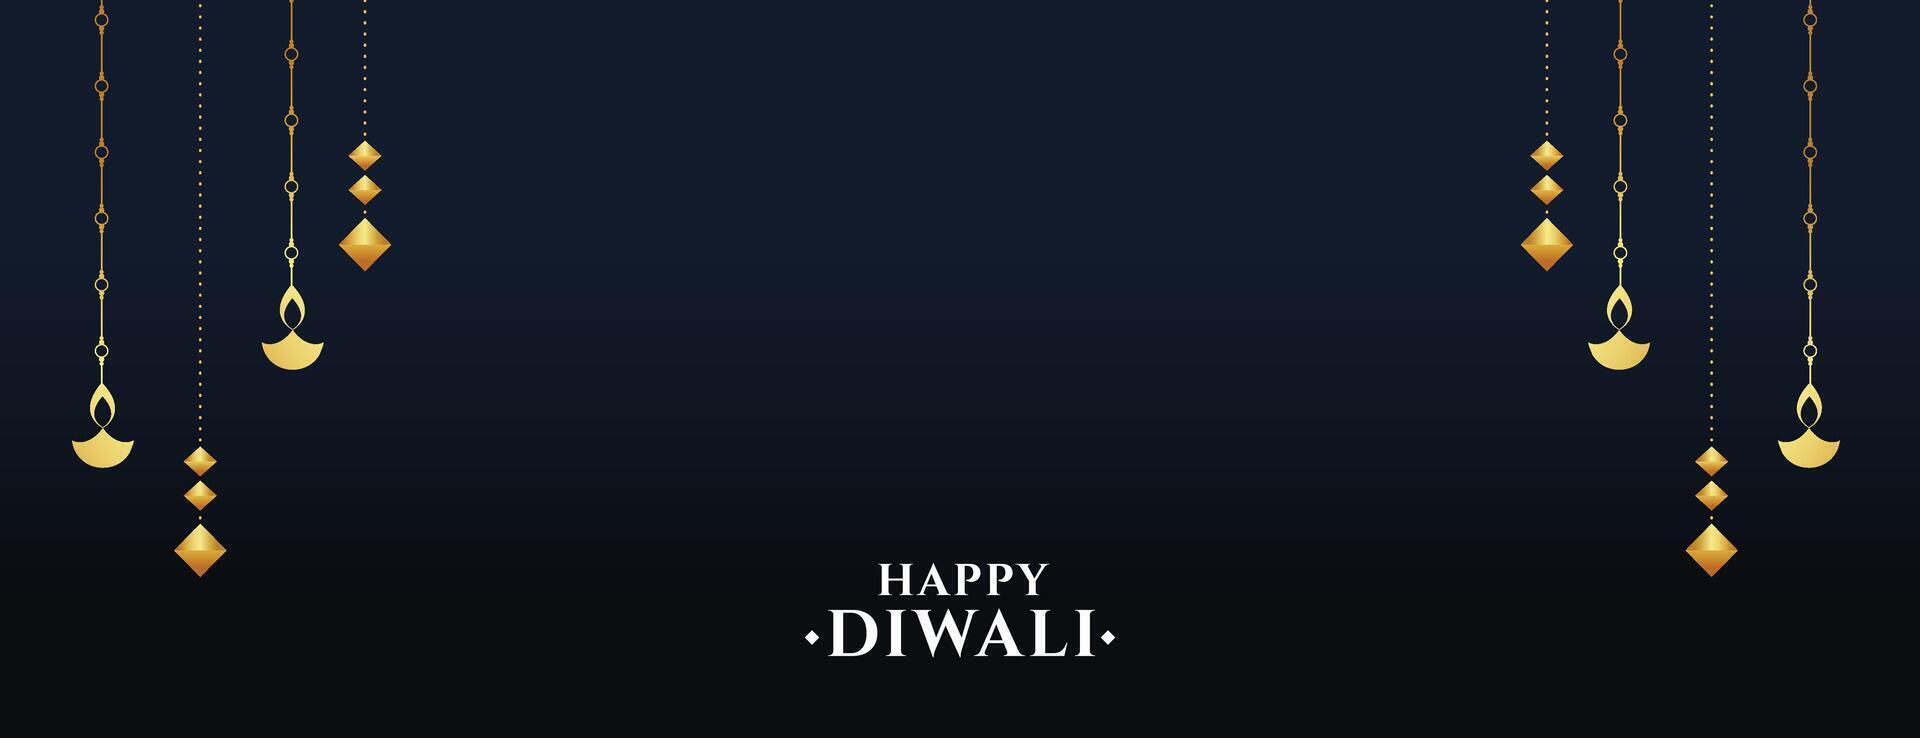 hindou religieux content diwali bannière avec pendaison diya vecteur